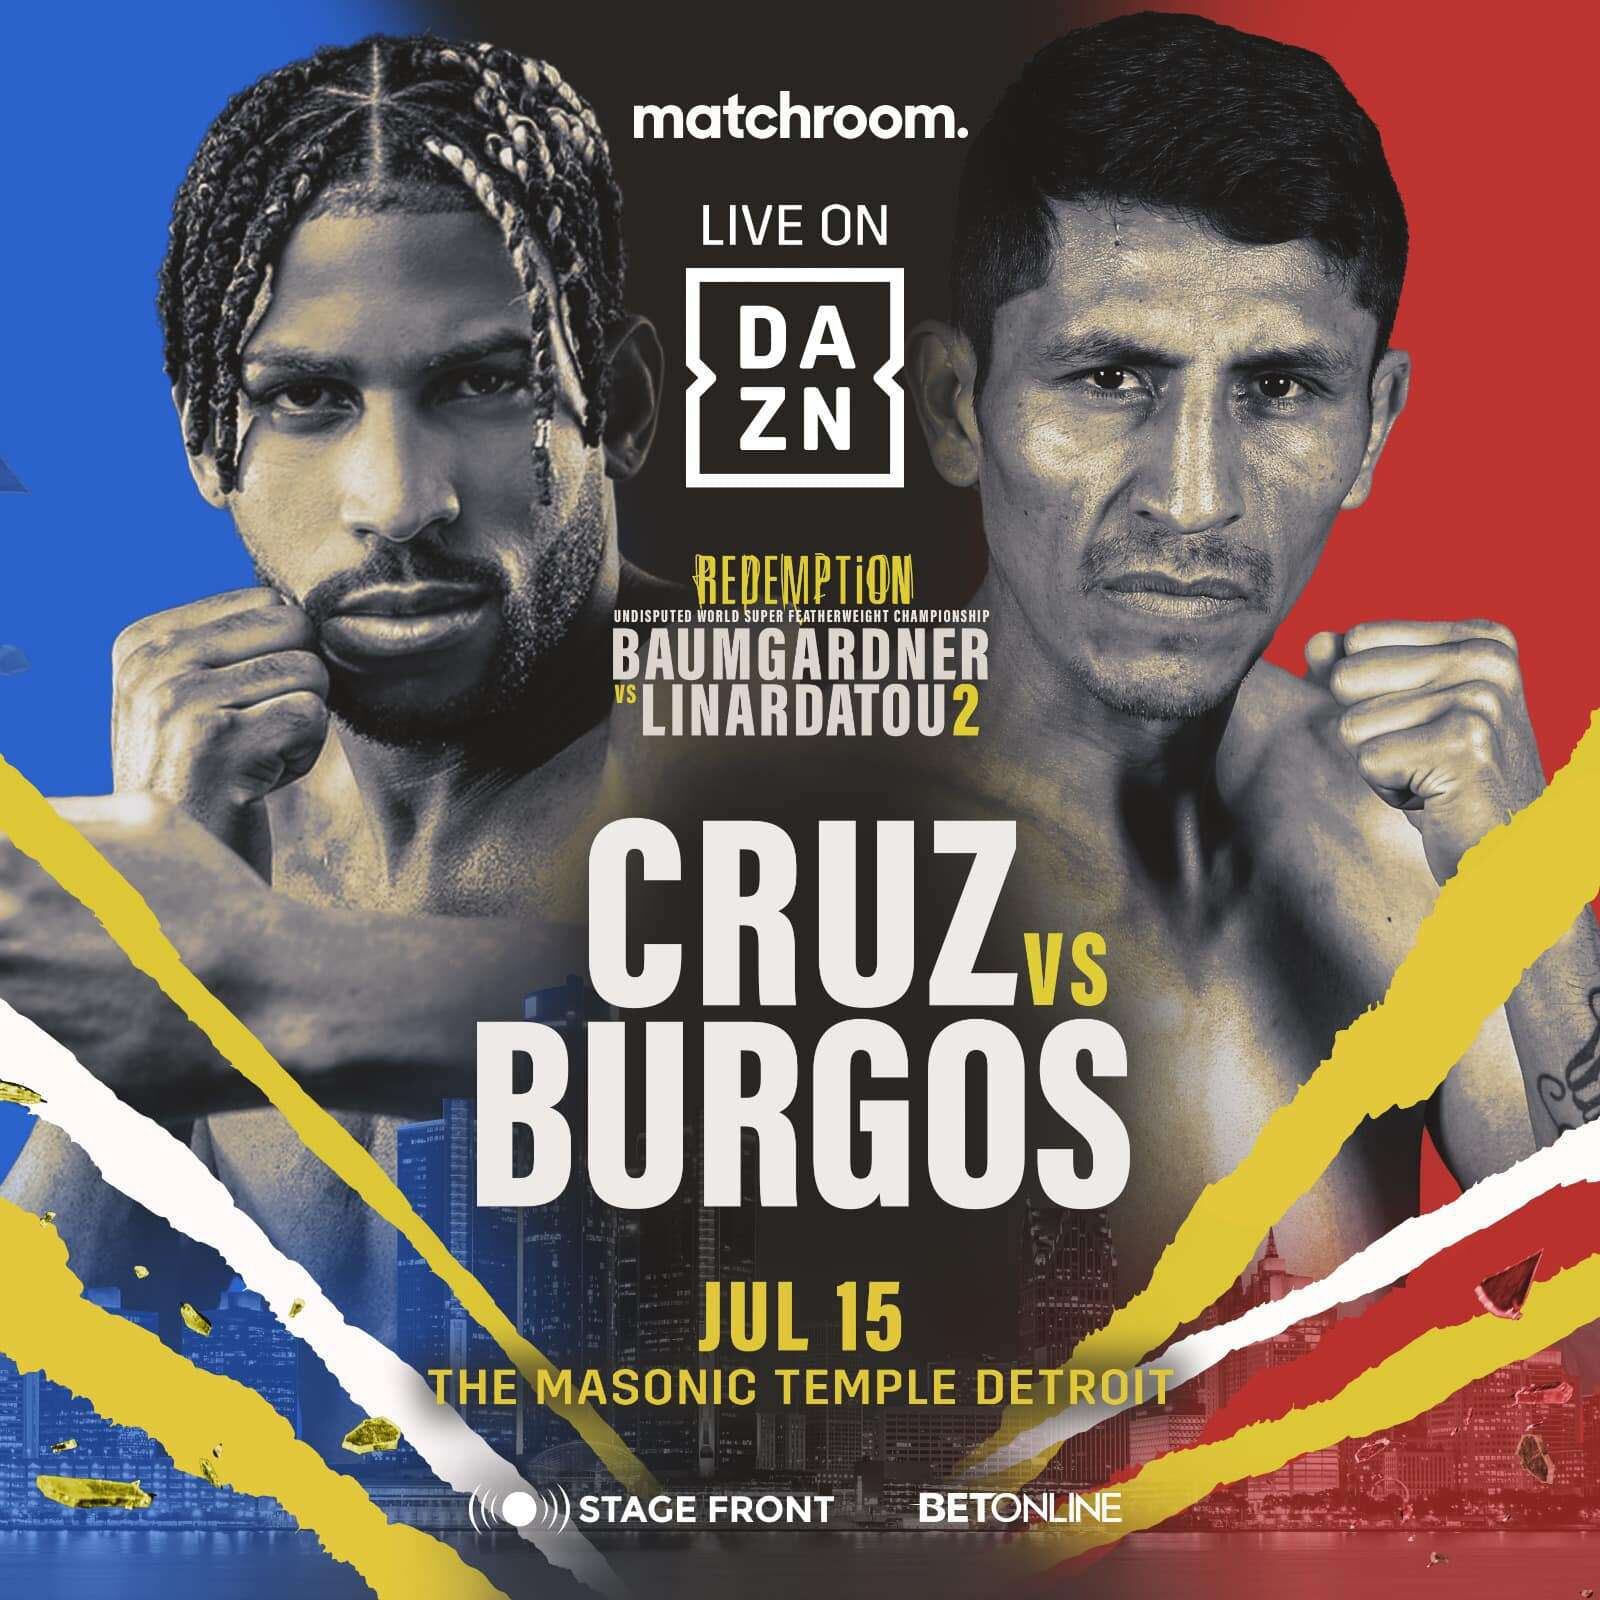 El afiche promocional de la pelea entre Cruz y Burgos